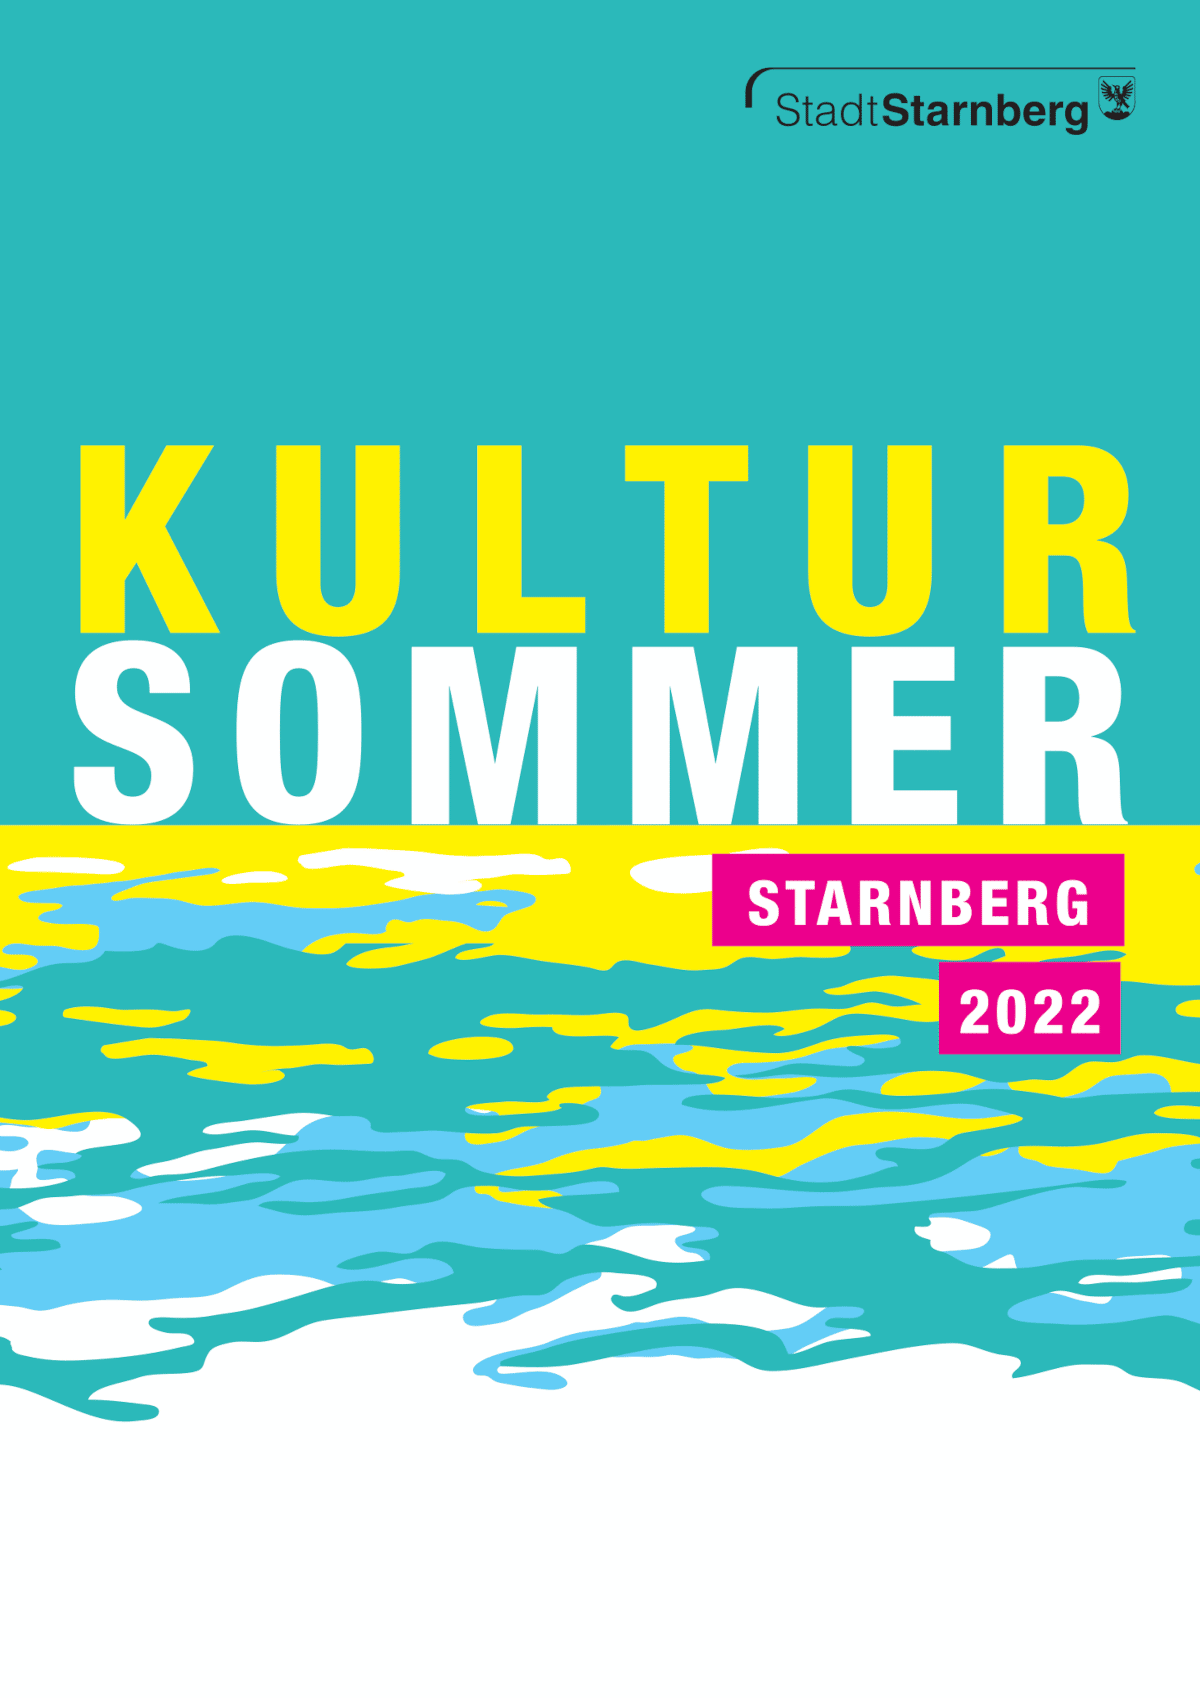 Kultursommer Starnberg: Summertime